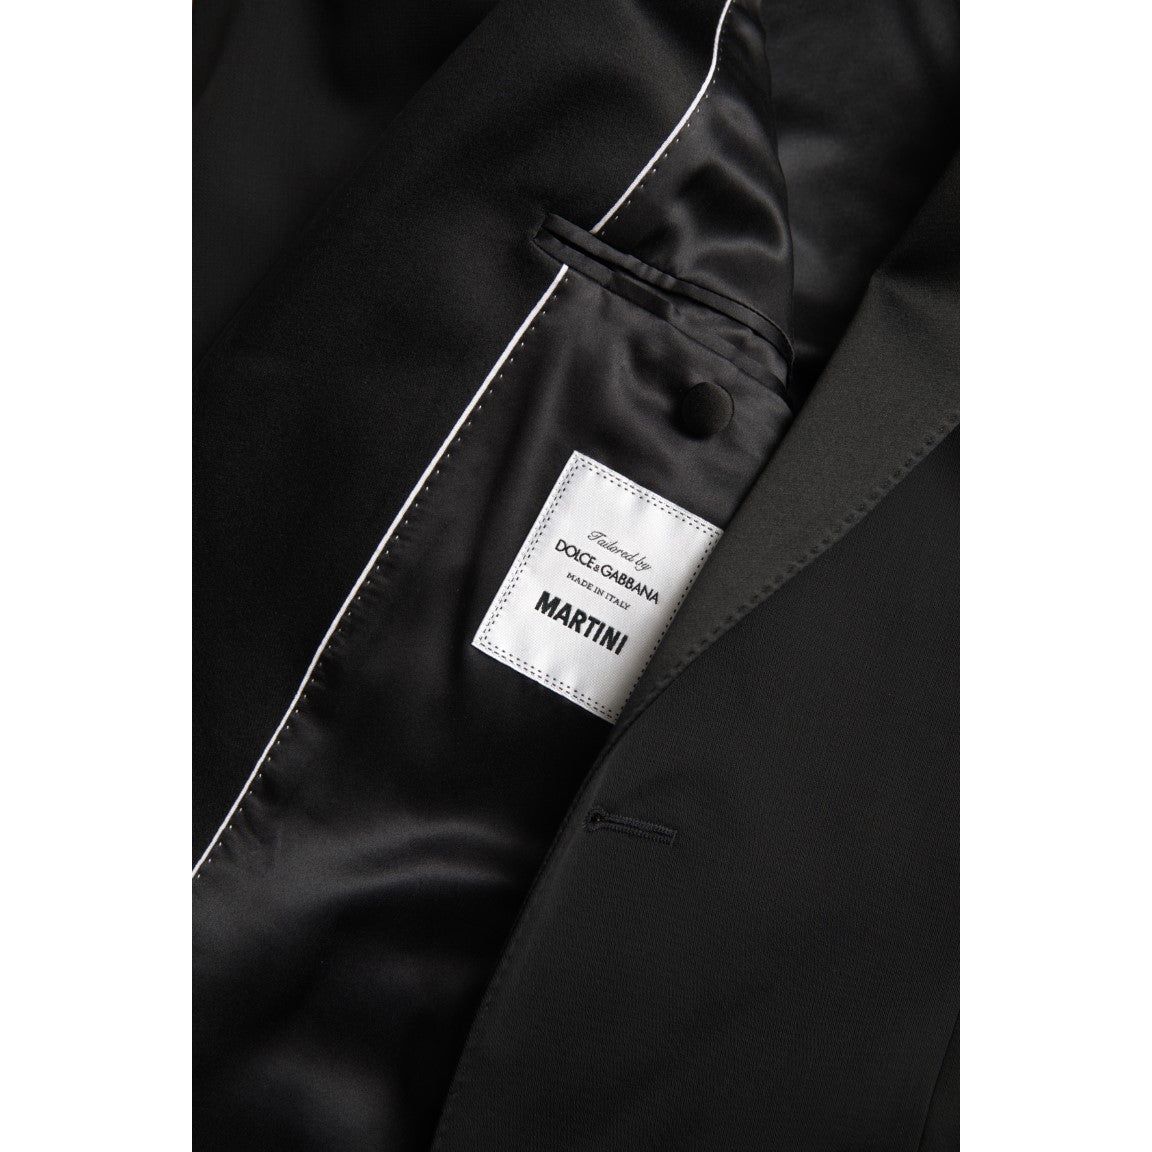 Dolce & GabbanaChic Slim Fit Virgin Wool BlazerMcRichard Designer Brands£1369.00